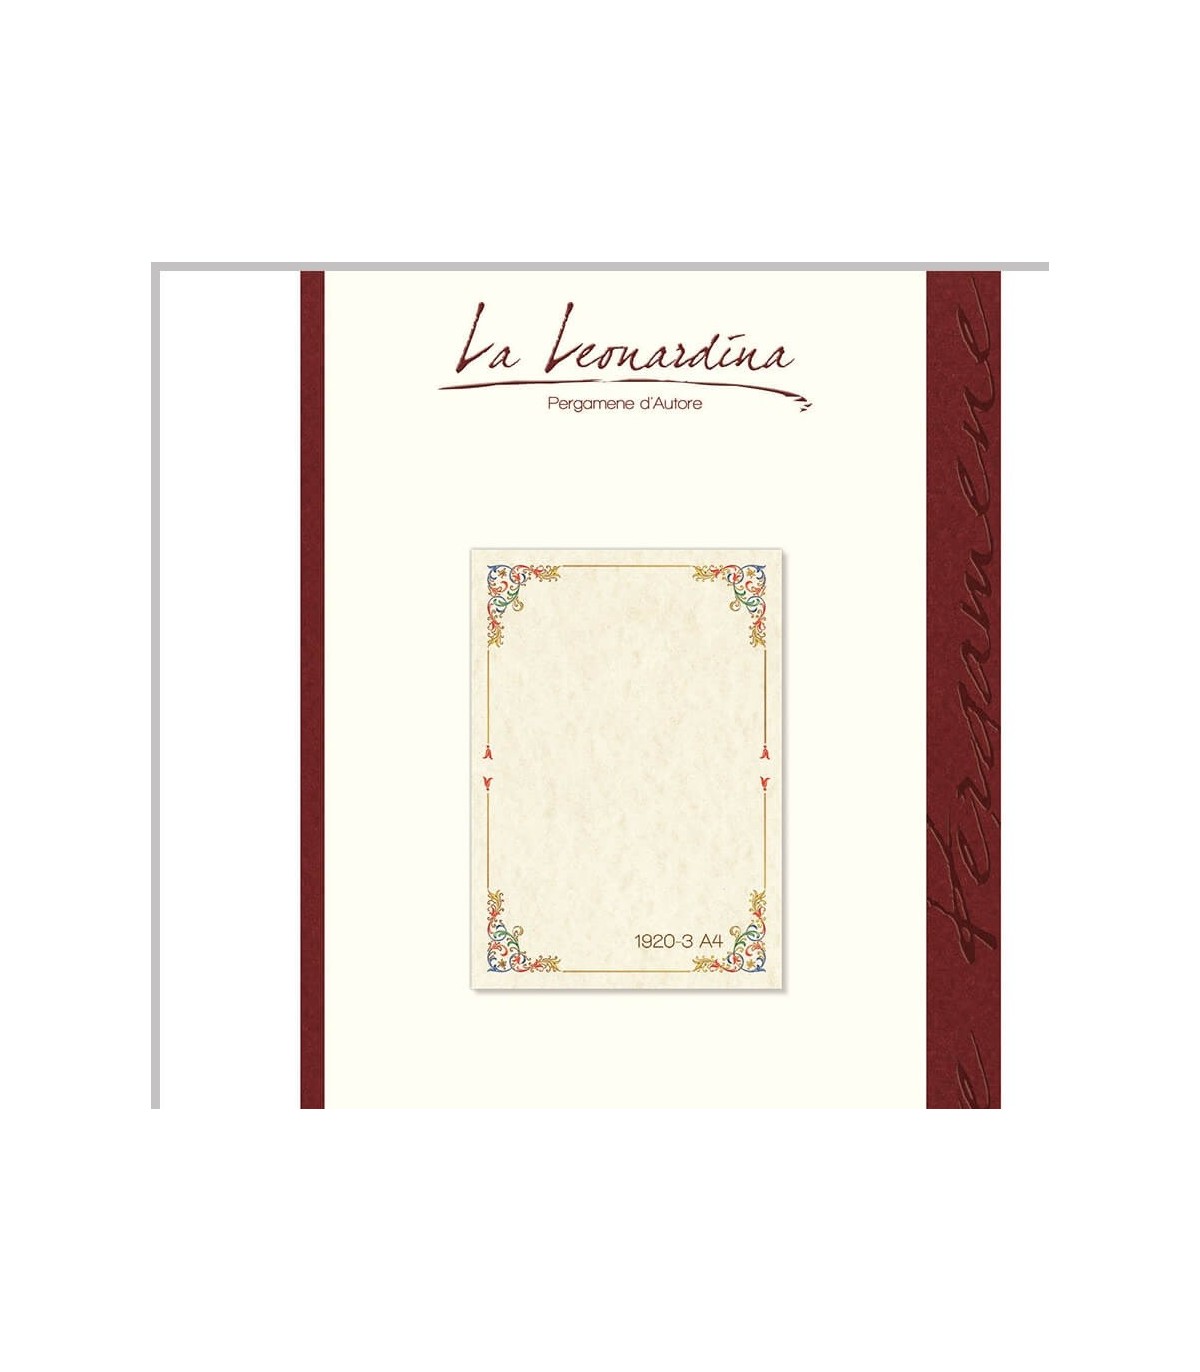 Carta Pergamena La Leonardina 160 gr. Formato A4 colore avorio conf.12 fogli